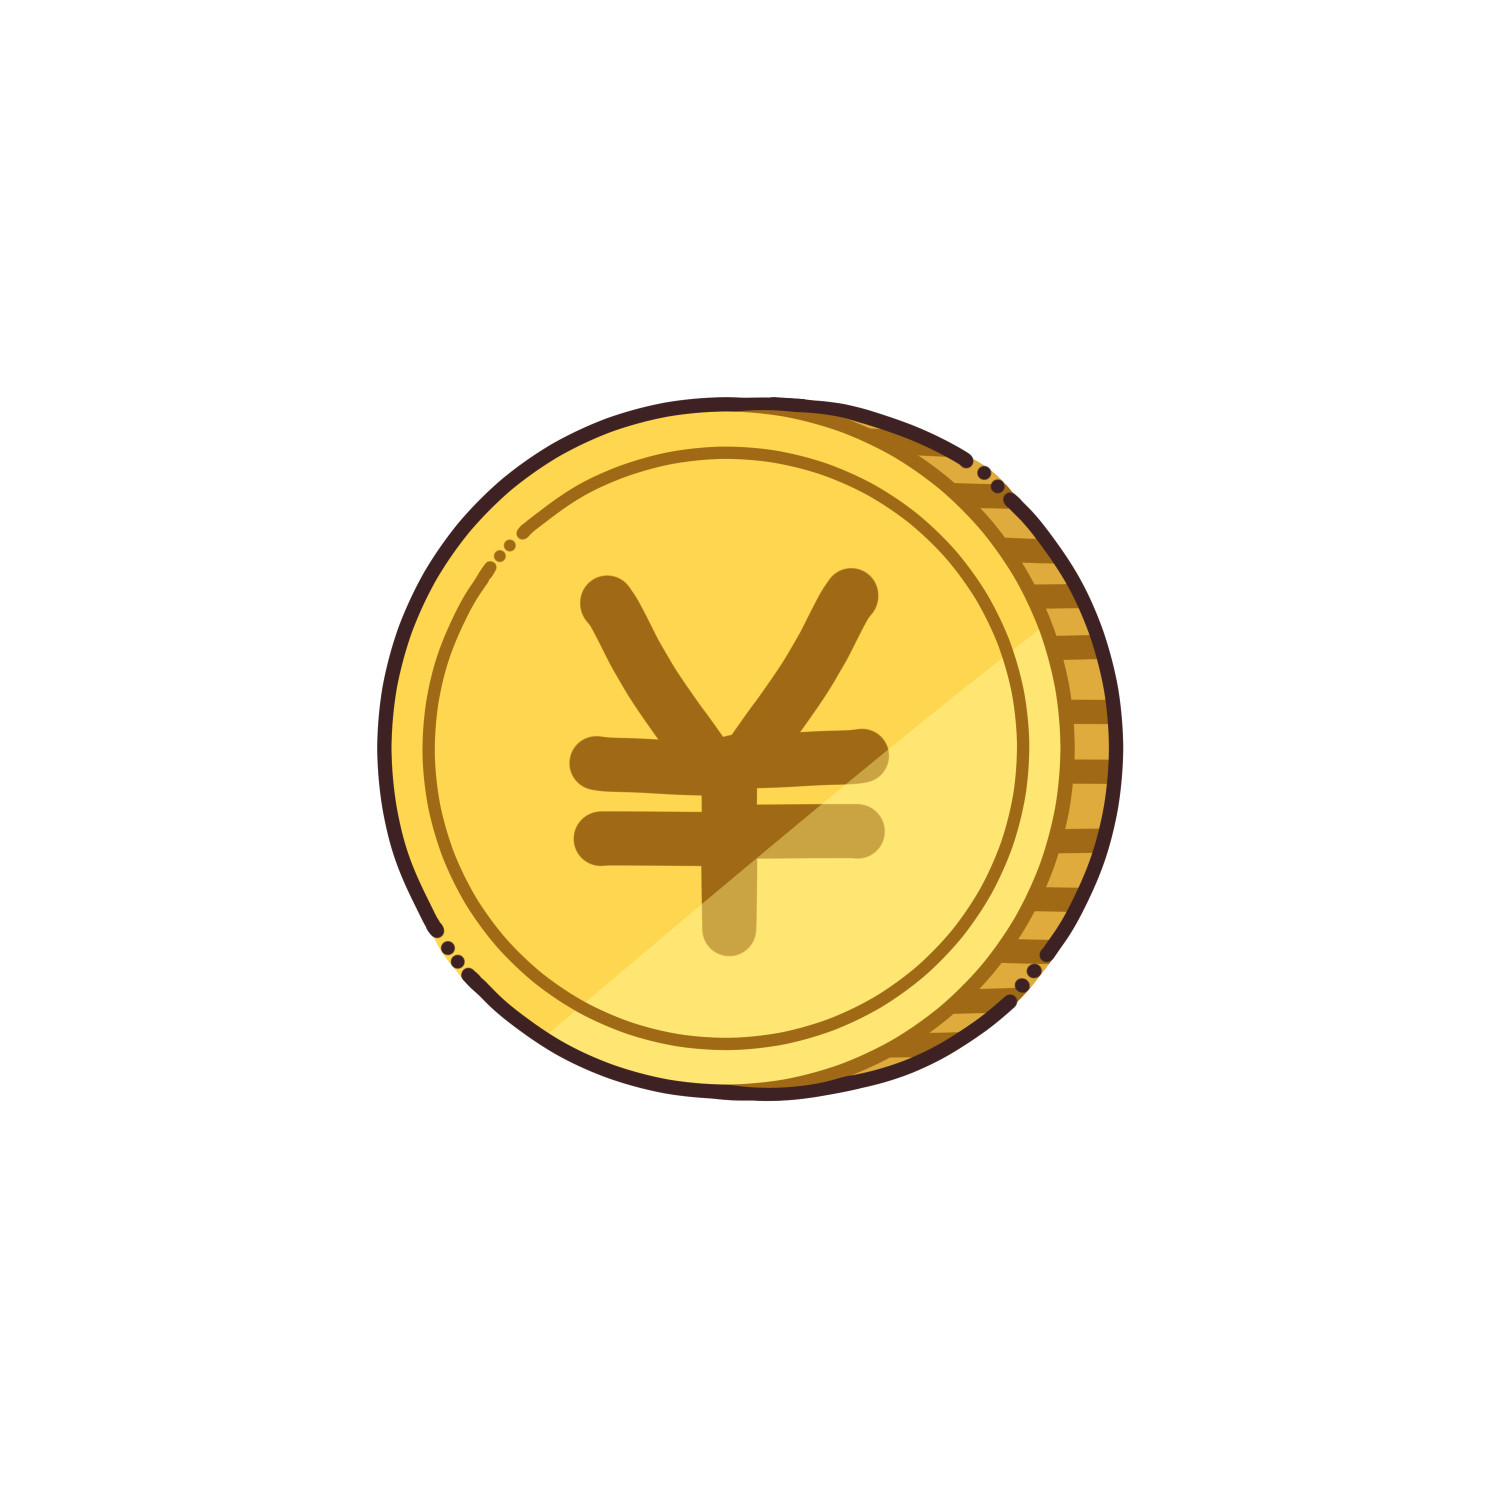 円マークがついたコインのイラスト/商用利用可能・無料イラストフリー素材サイト